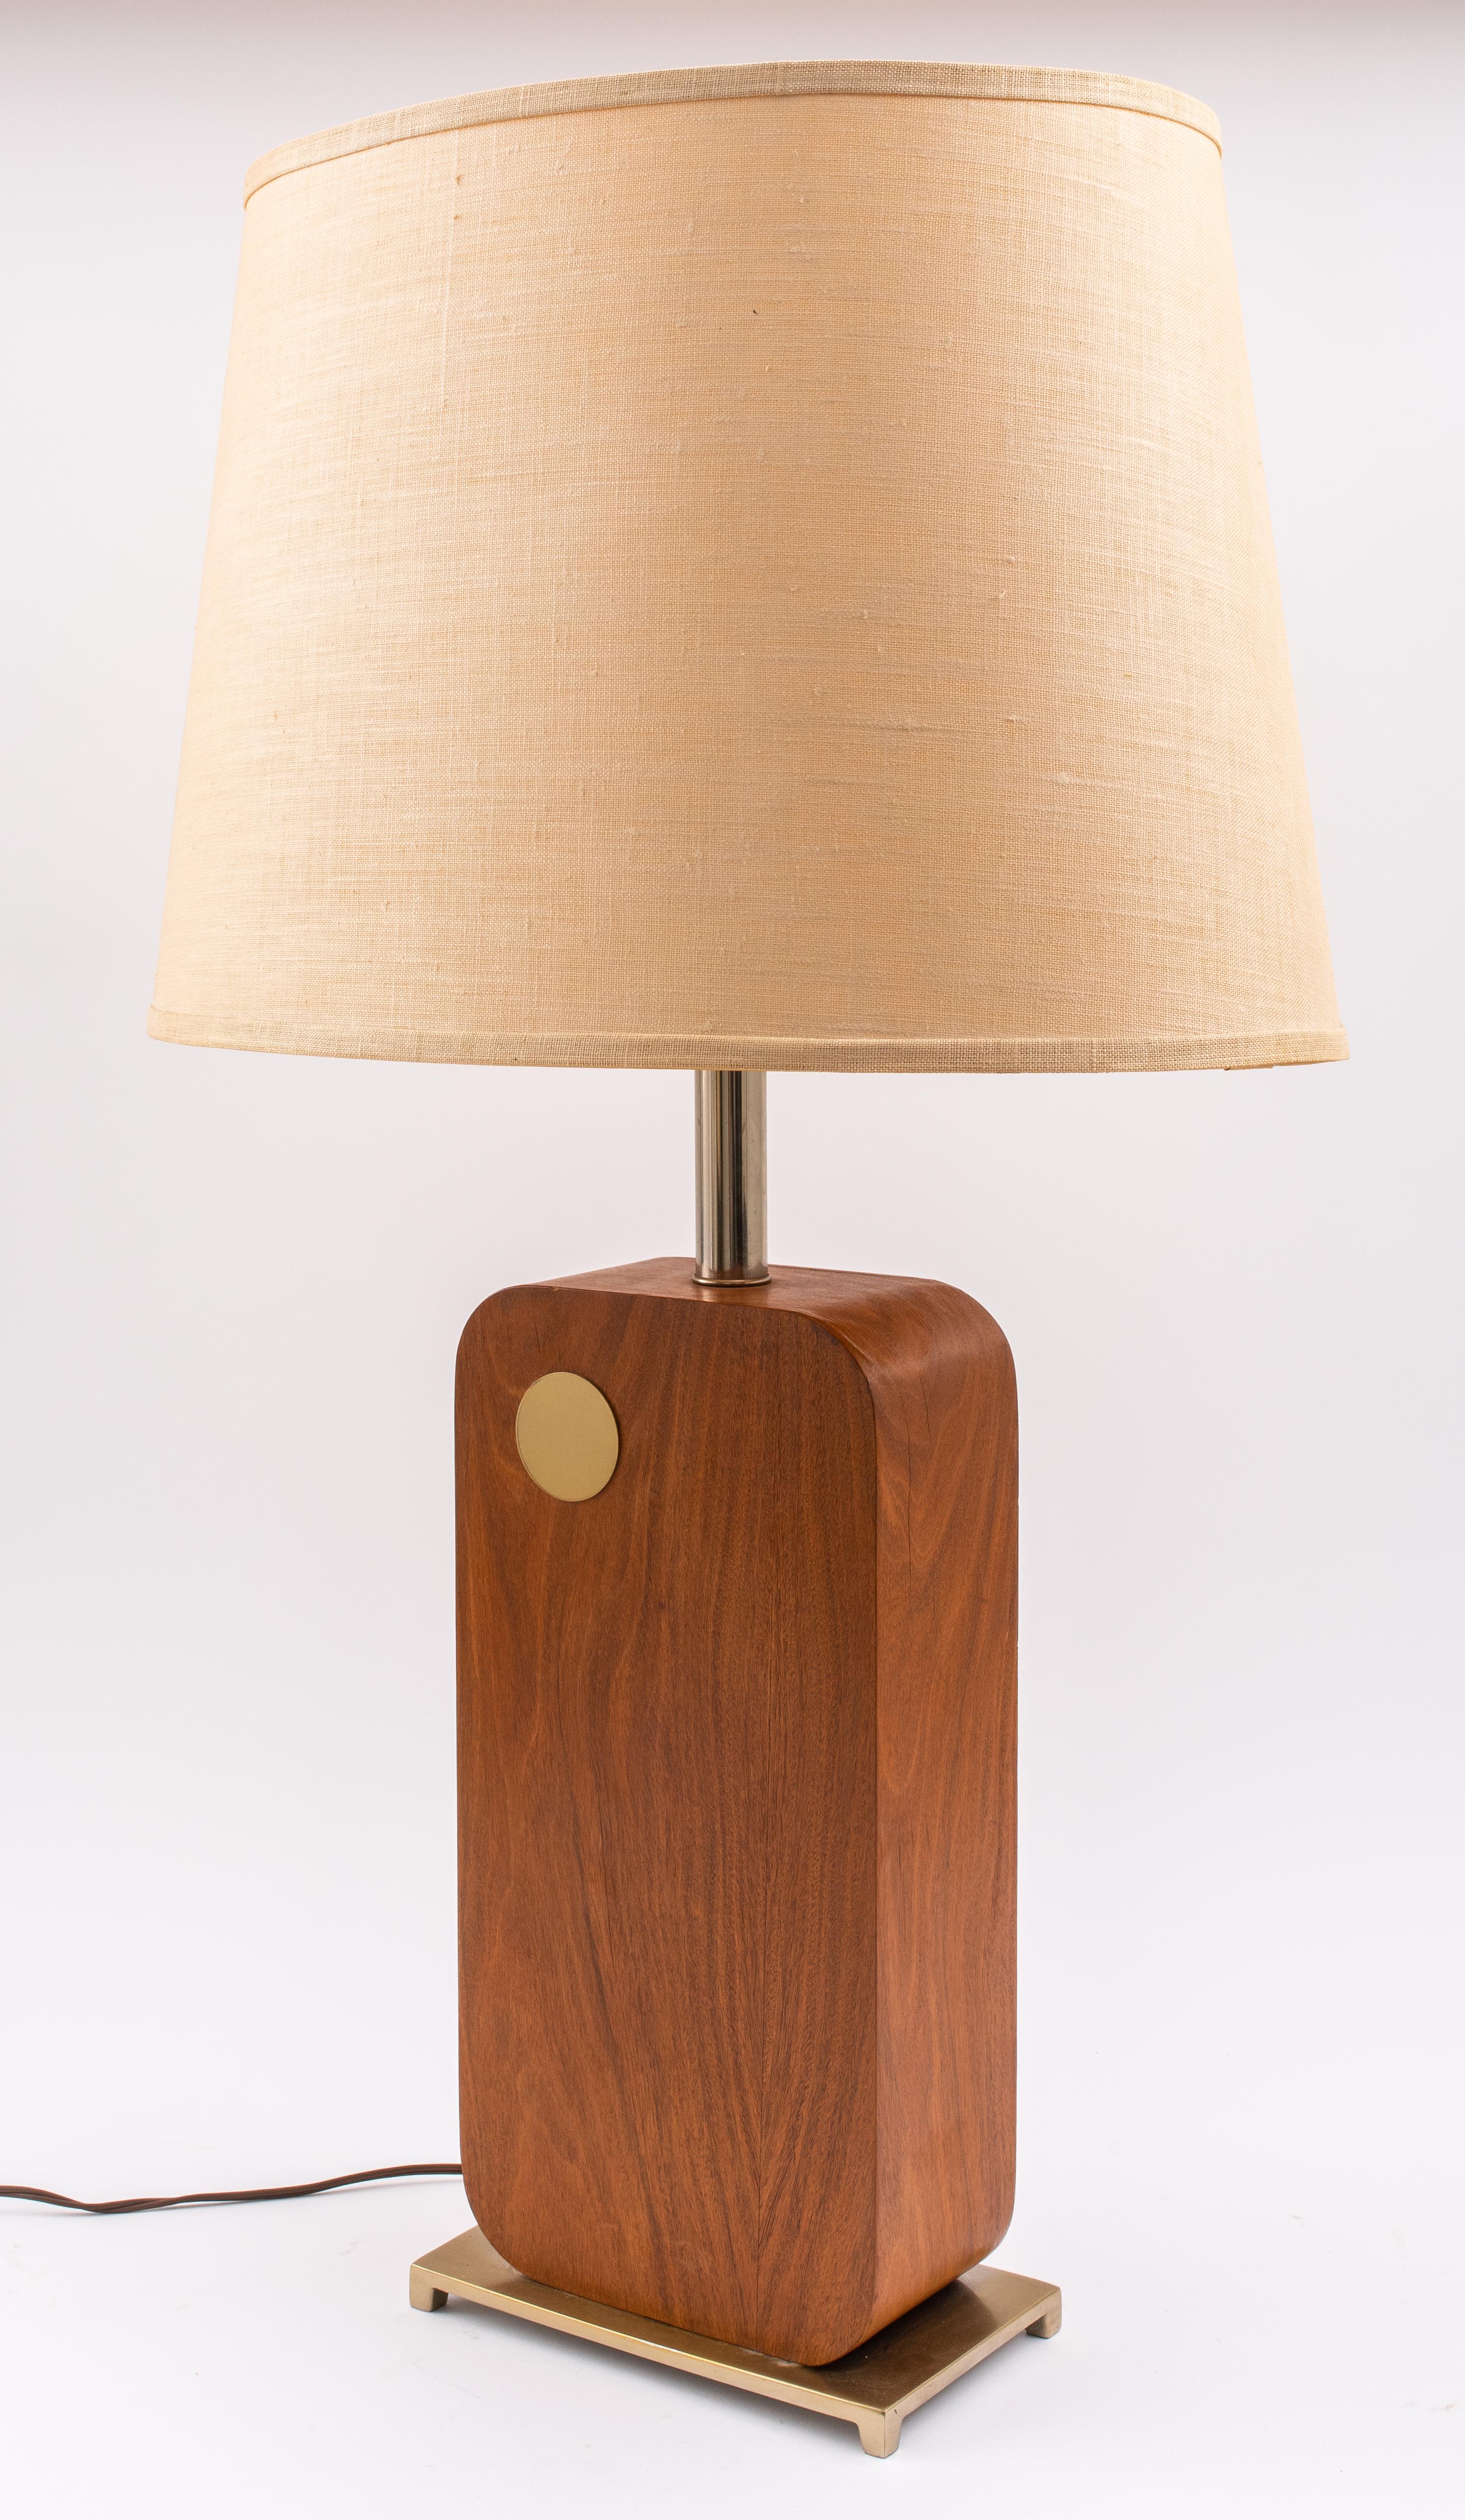 Mid-Century Modern Tischlampe von Laurel Lighting Company, die rechteckige vergoldetem Messing Basis durch ein Holz Rechteck mit abgerundeten Kanten und einem goldfarbenen Metall Kreis Akzent montiert, mit einem beige Leinenschirm, markiert 